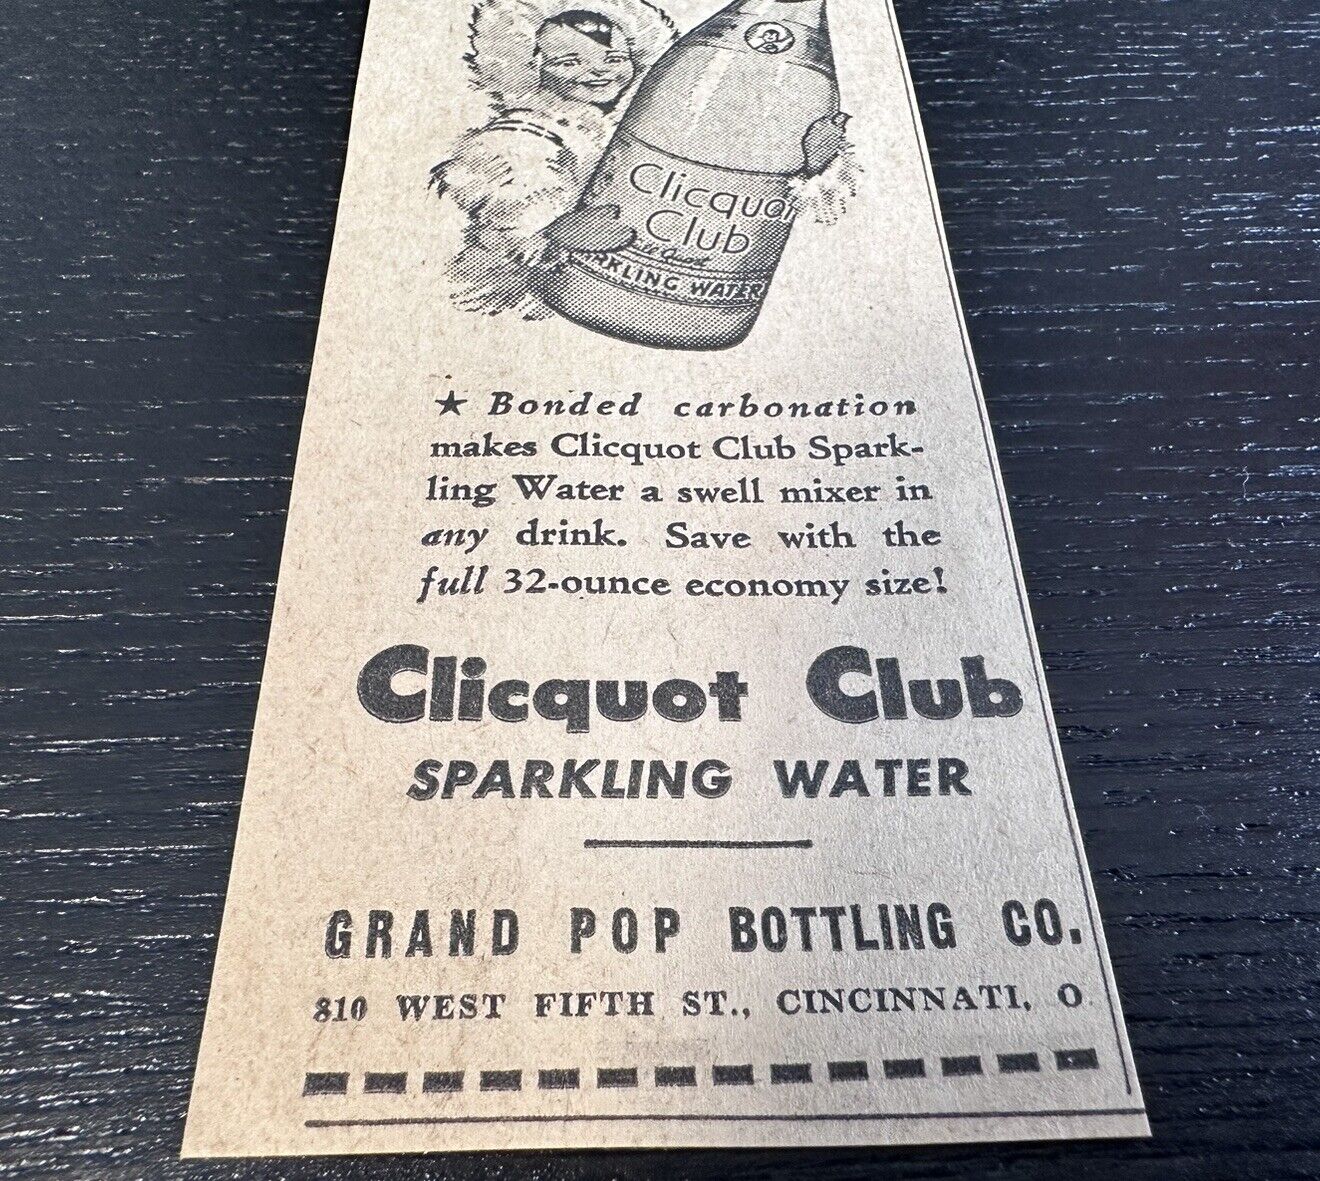 1942 Grand Pop Bottling Clicquot Club Cincinnati Ohio Newspaper Ad WWII Era Soda